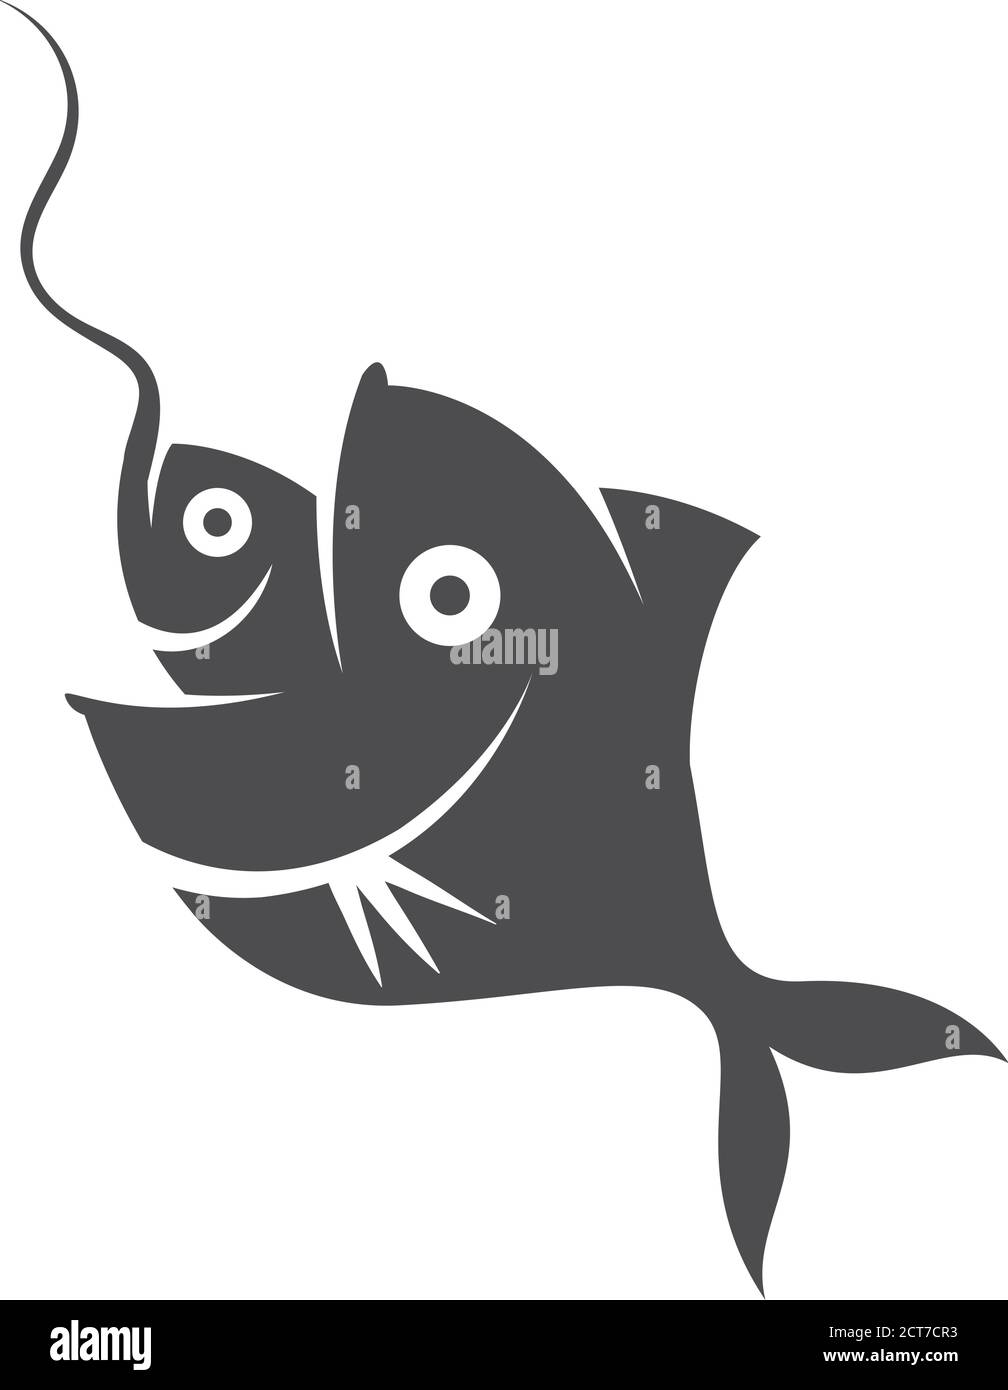 Pesce mangiare esca icona in bianco e nero. Metafora aziendale. Illustrazione vettoriale. Illustrazione Vettoriale